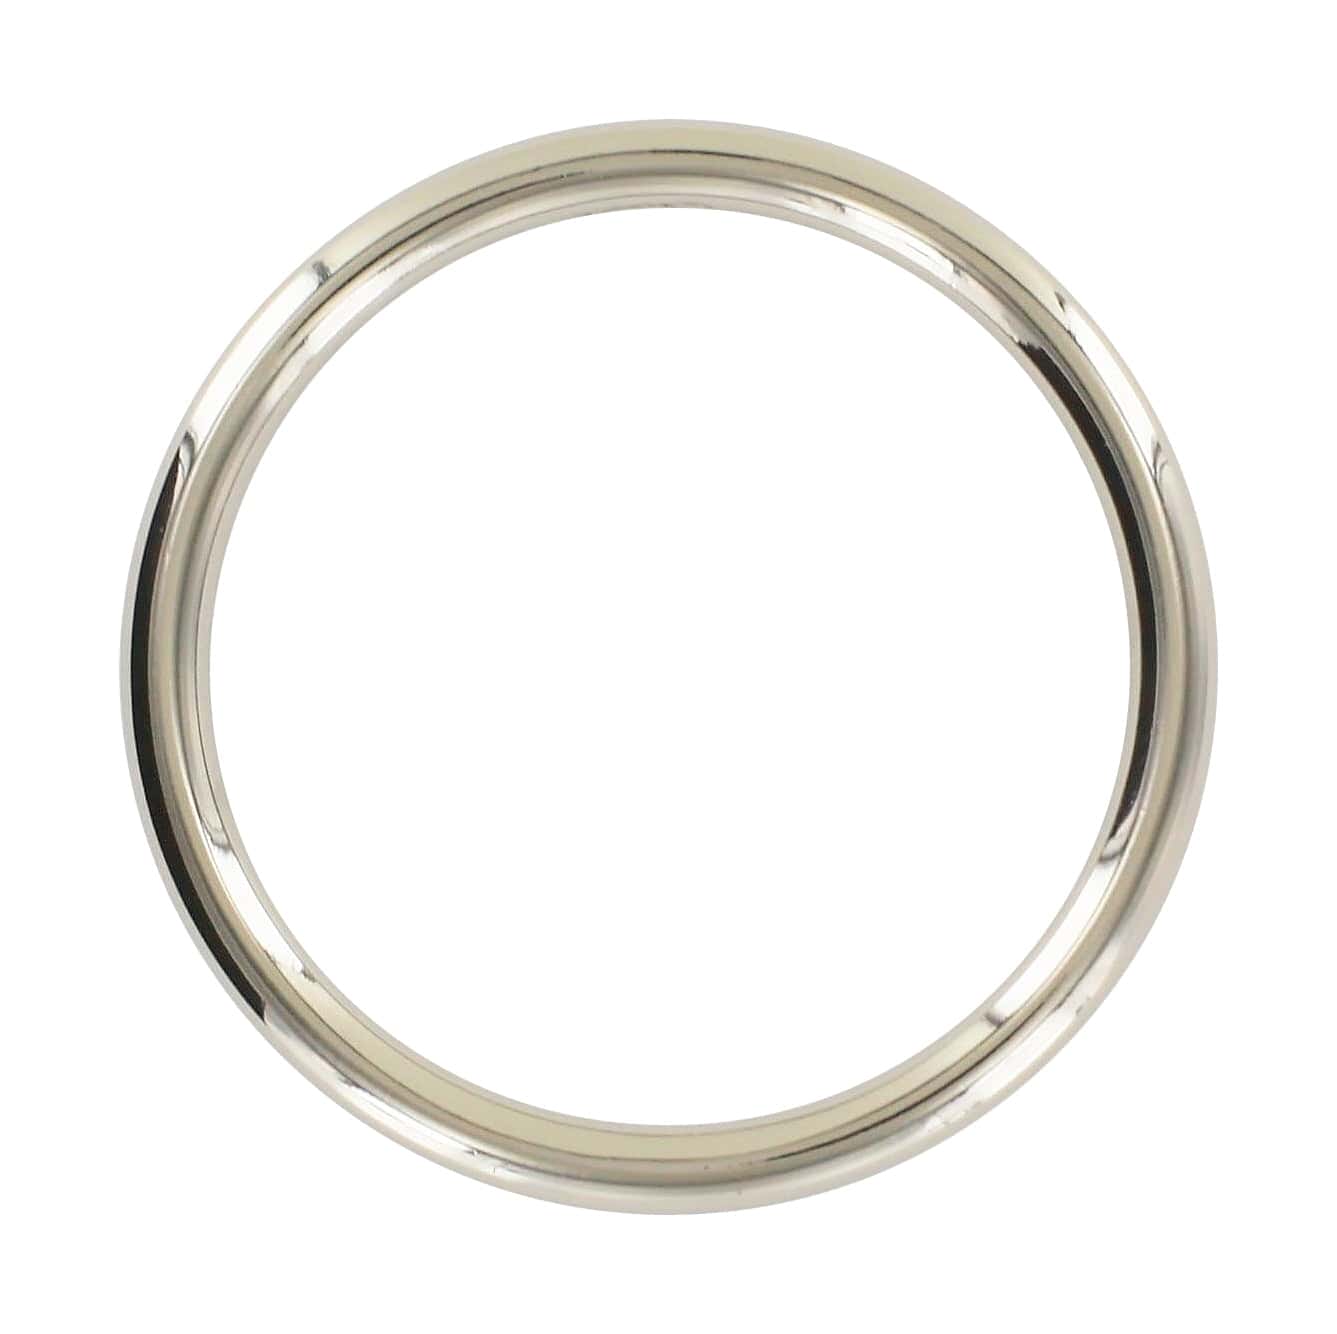 Ohio Travel Bag Rings & Slides 2" Shiny Nickel, Cast Round Ring, Zinc Alloy, #P-2762-NIC P-2762-NIC